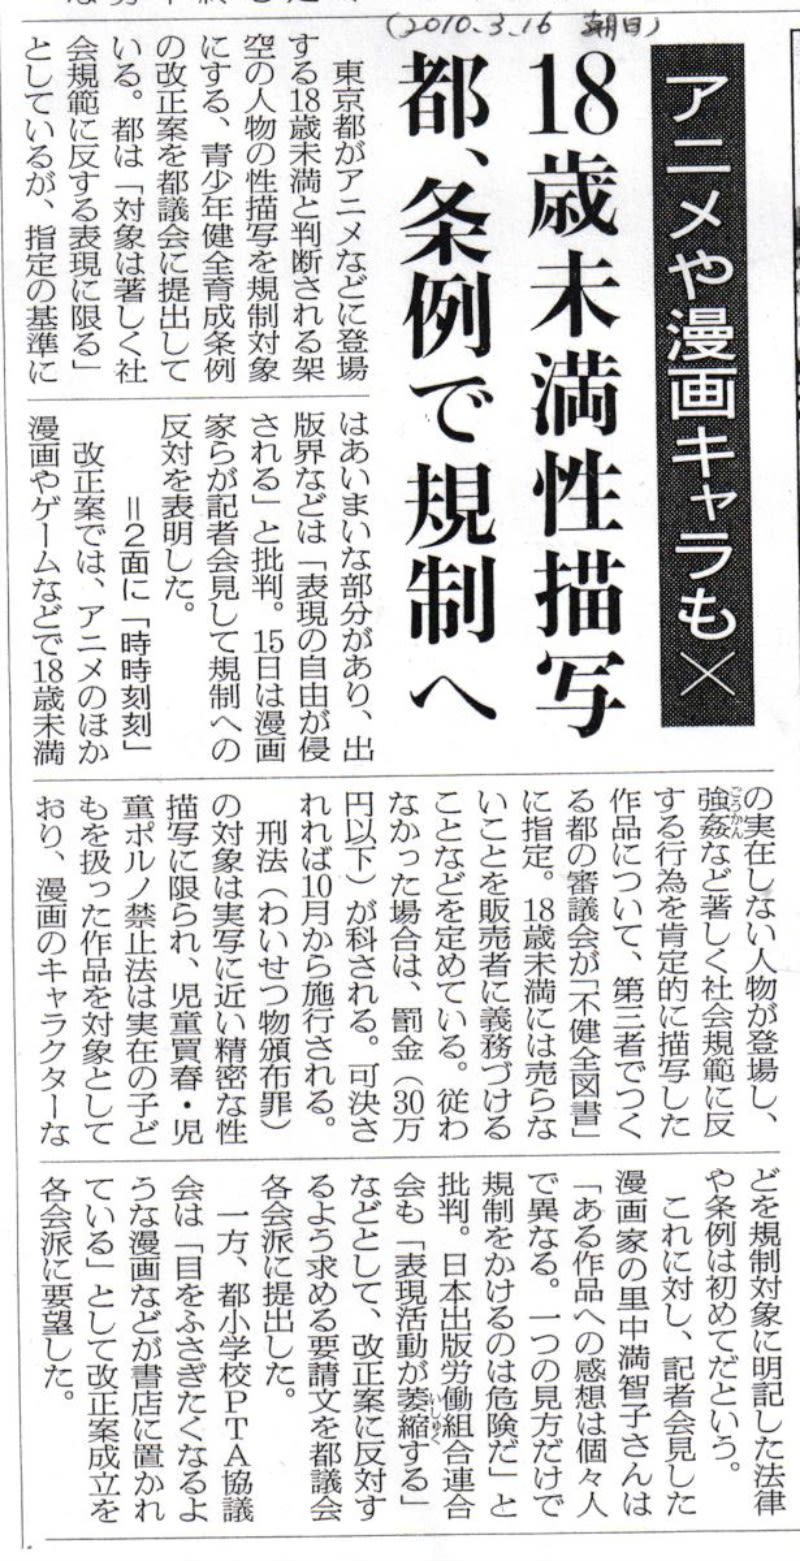 【再提出】東京都青少年健全育成条例改正案【危険！】※拡散  